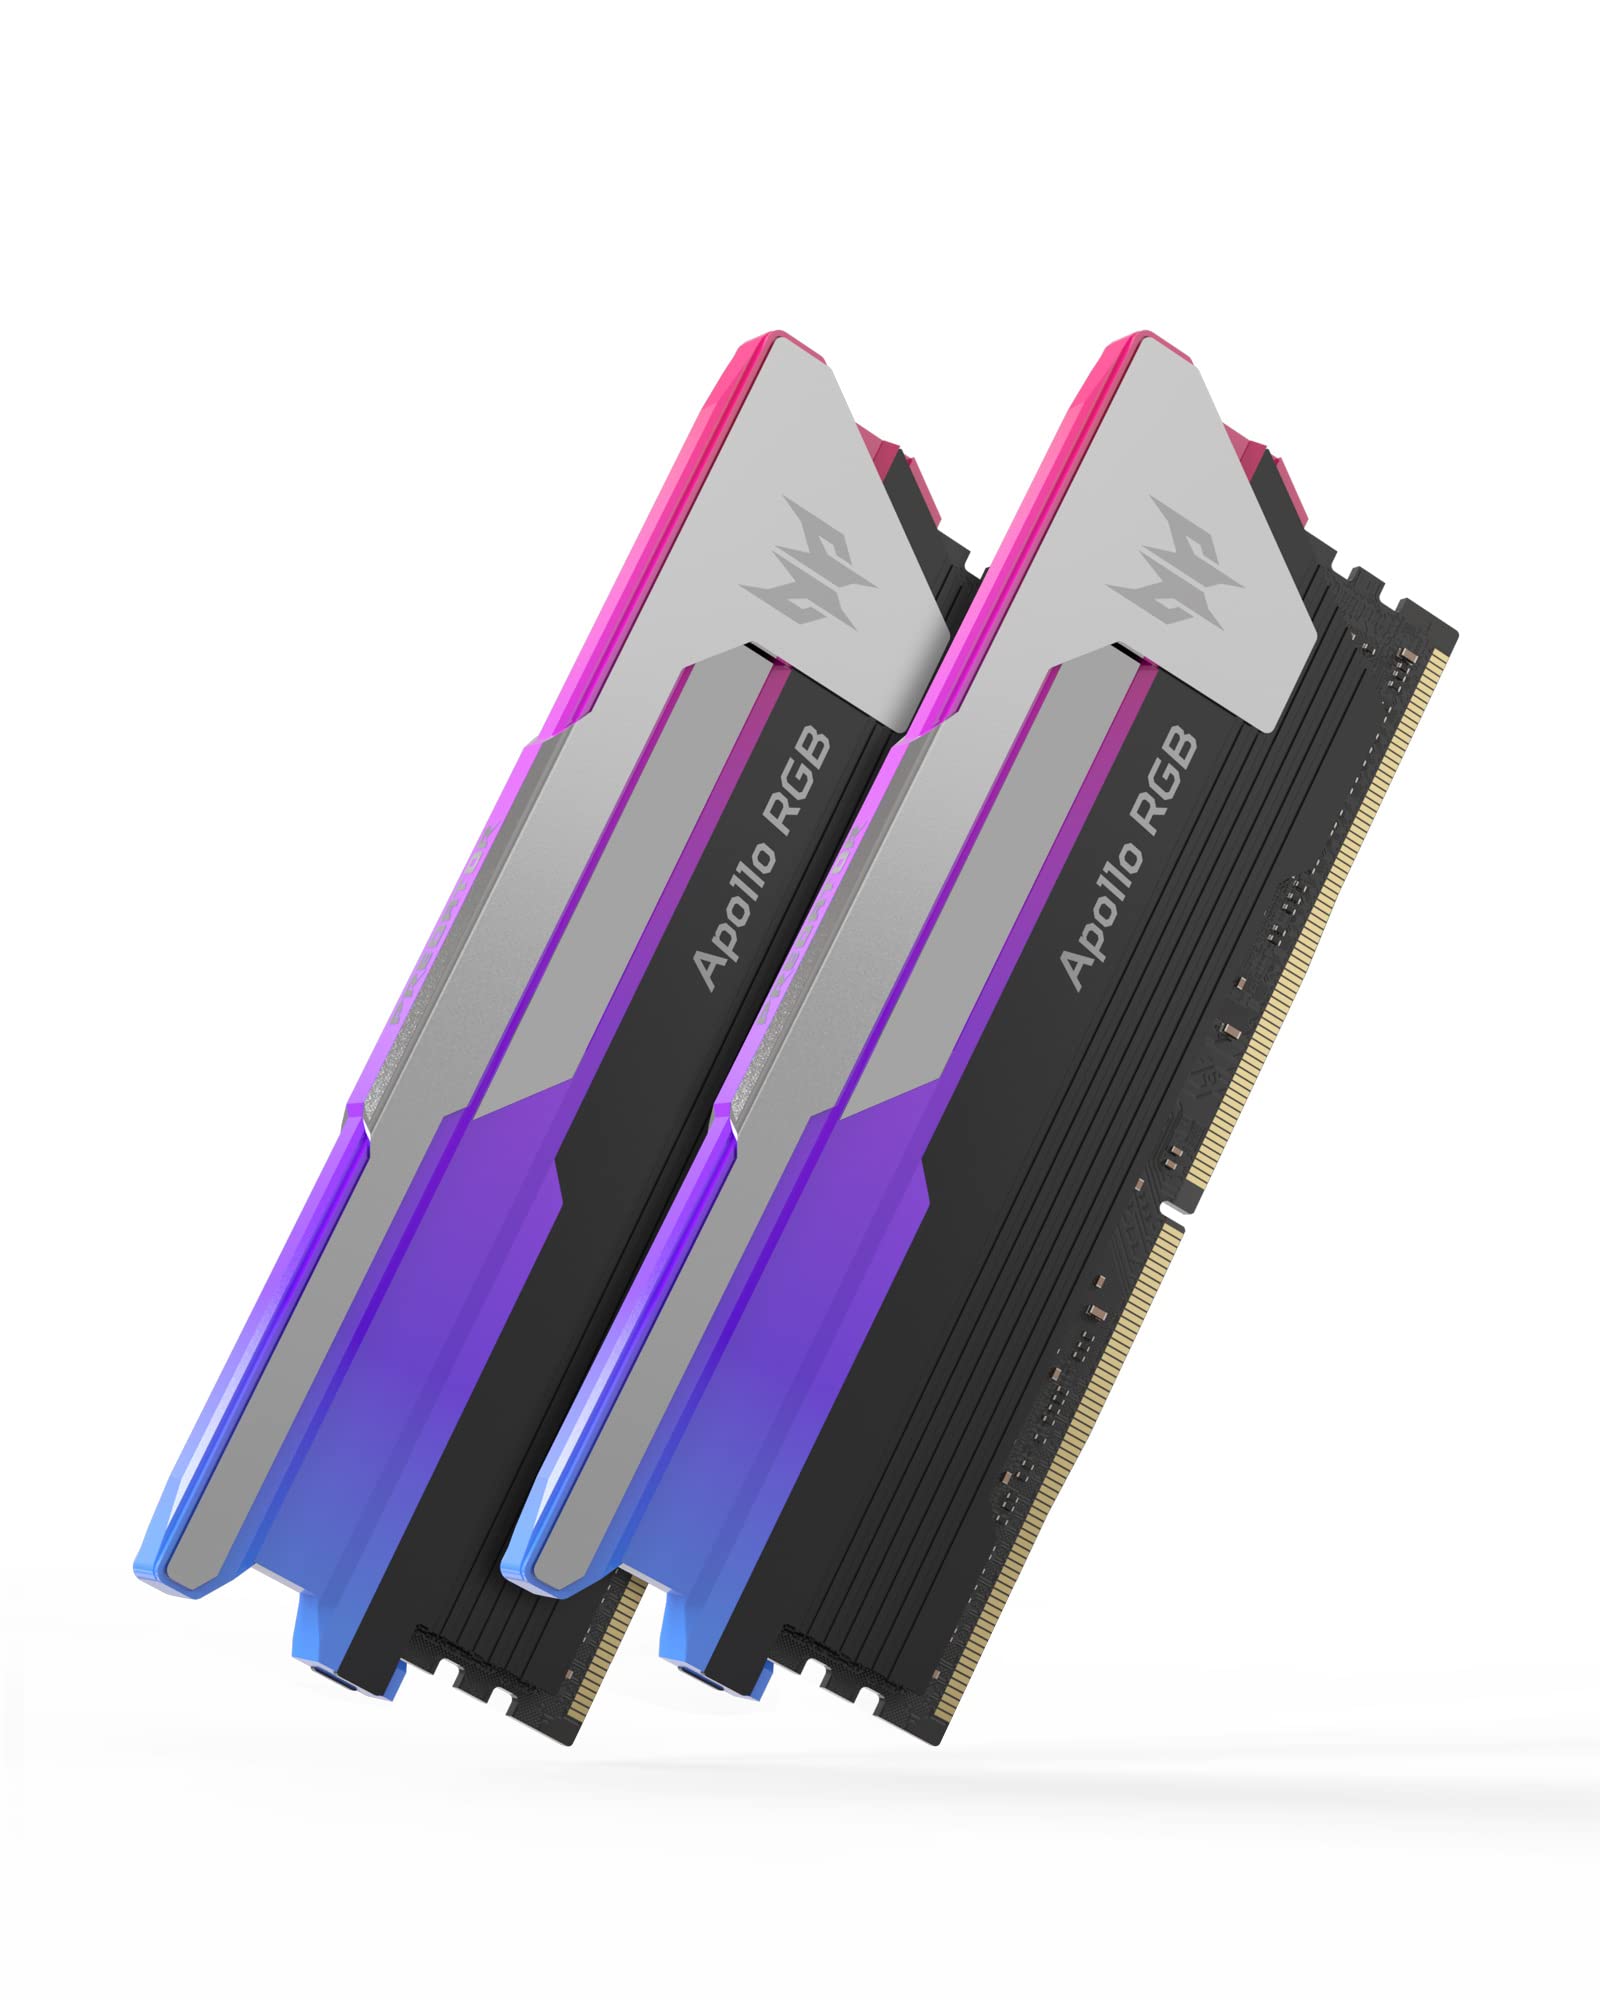 Acer プレデター アポロ 16GB8GBx2ゲーミング RAM 3600MHz DDR4 CL16 1.35V デスクトップPC LED メモリ